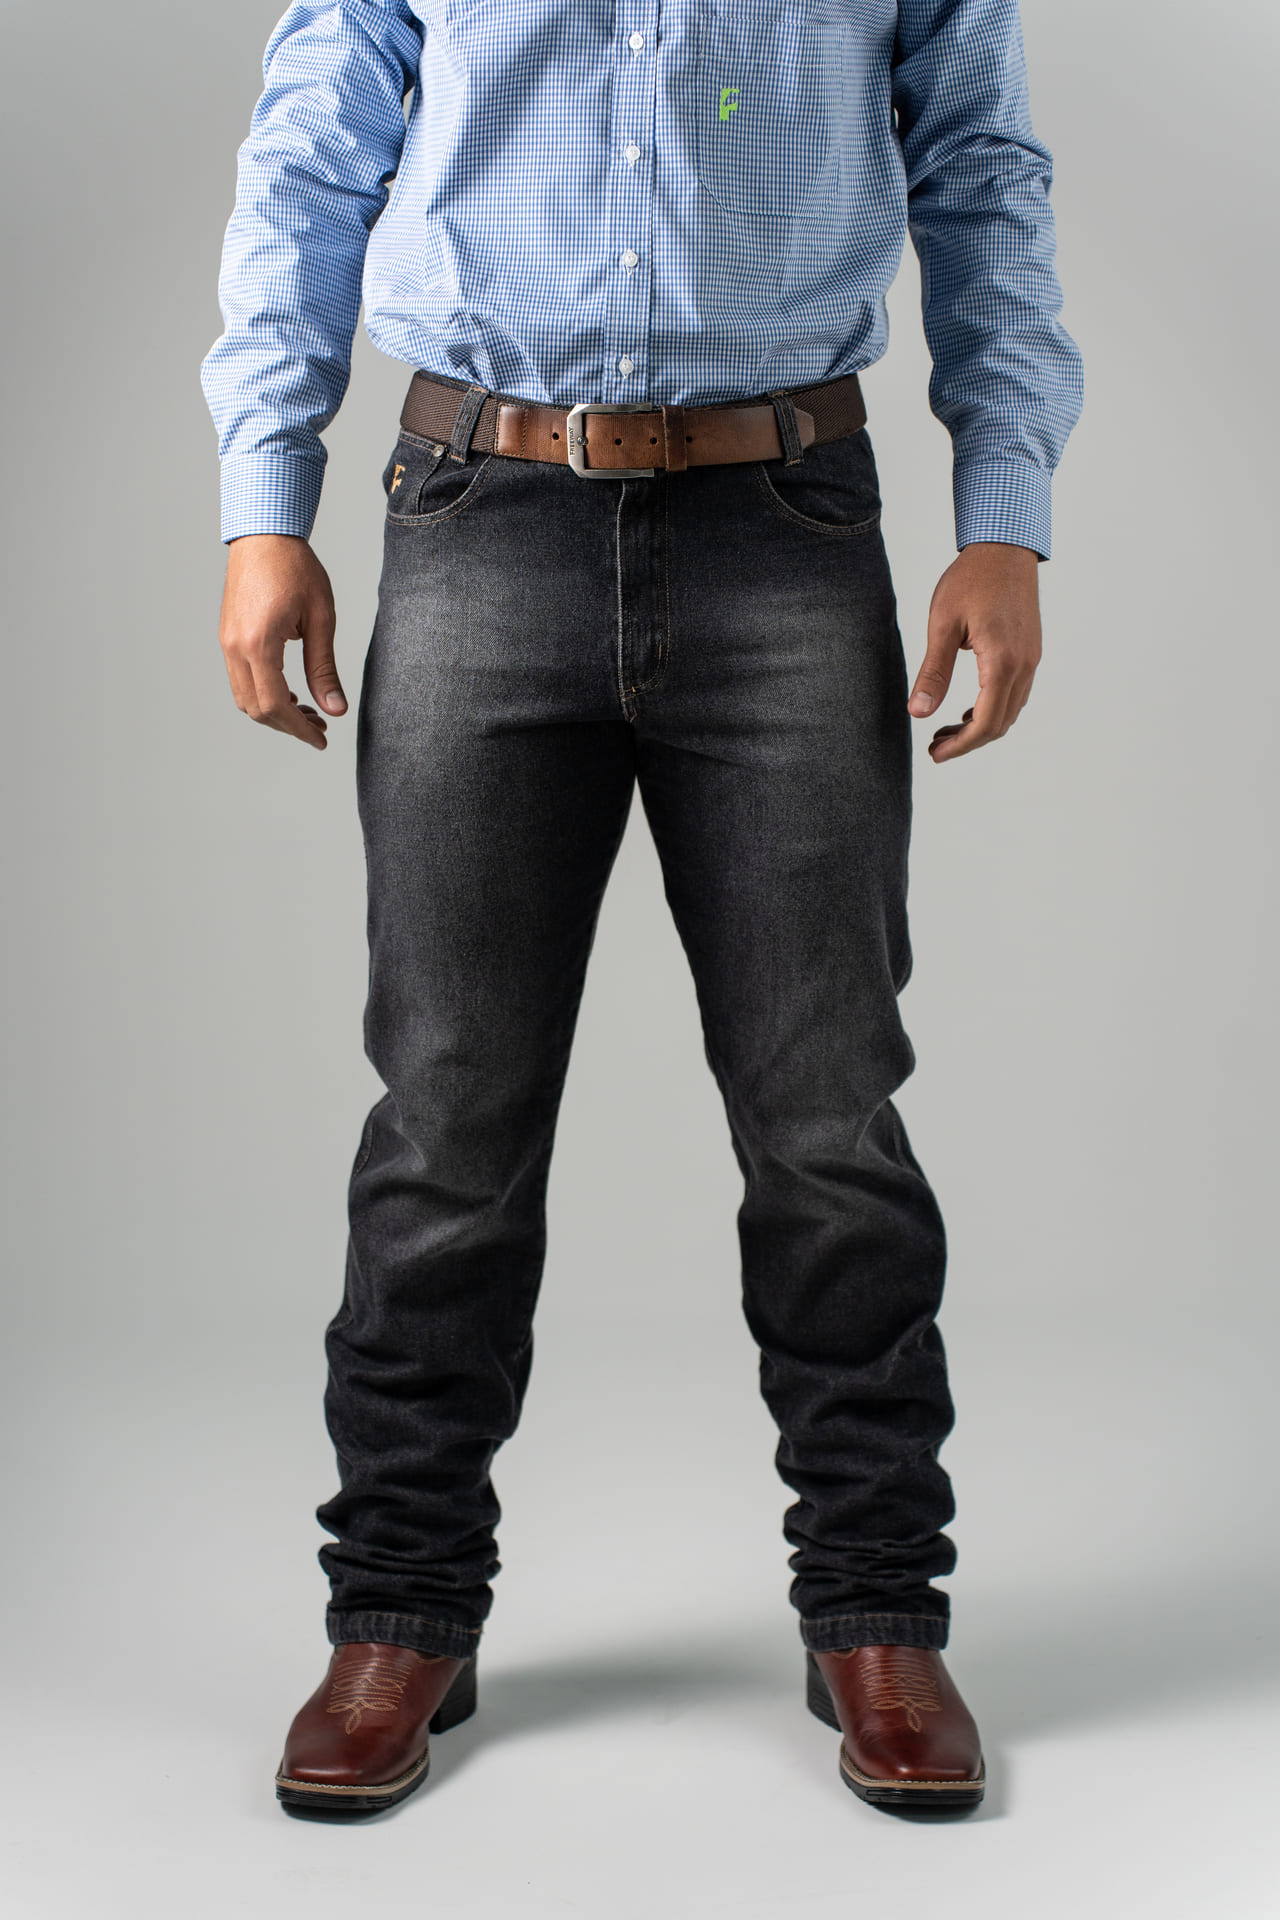 Calça Jeans Masculina - Black Steel